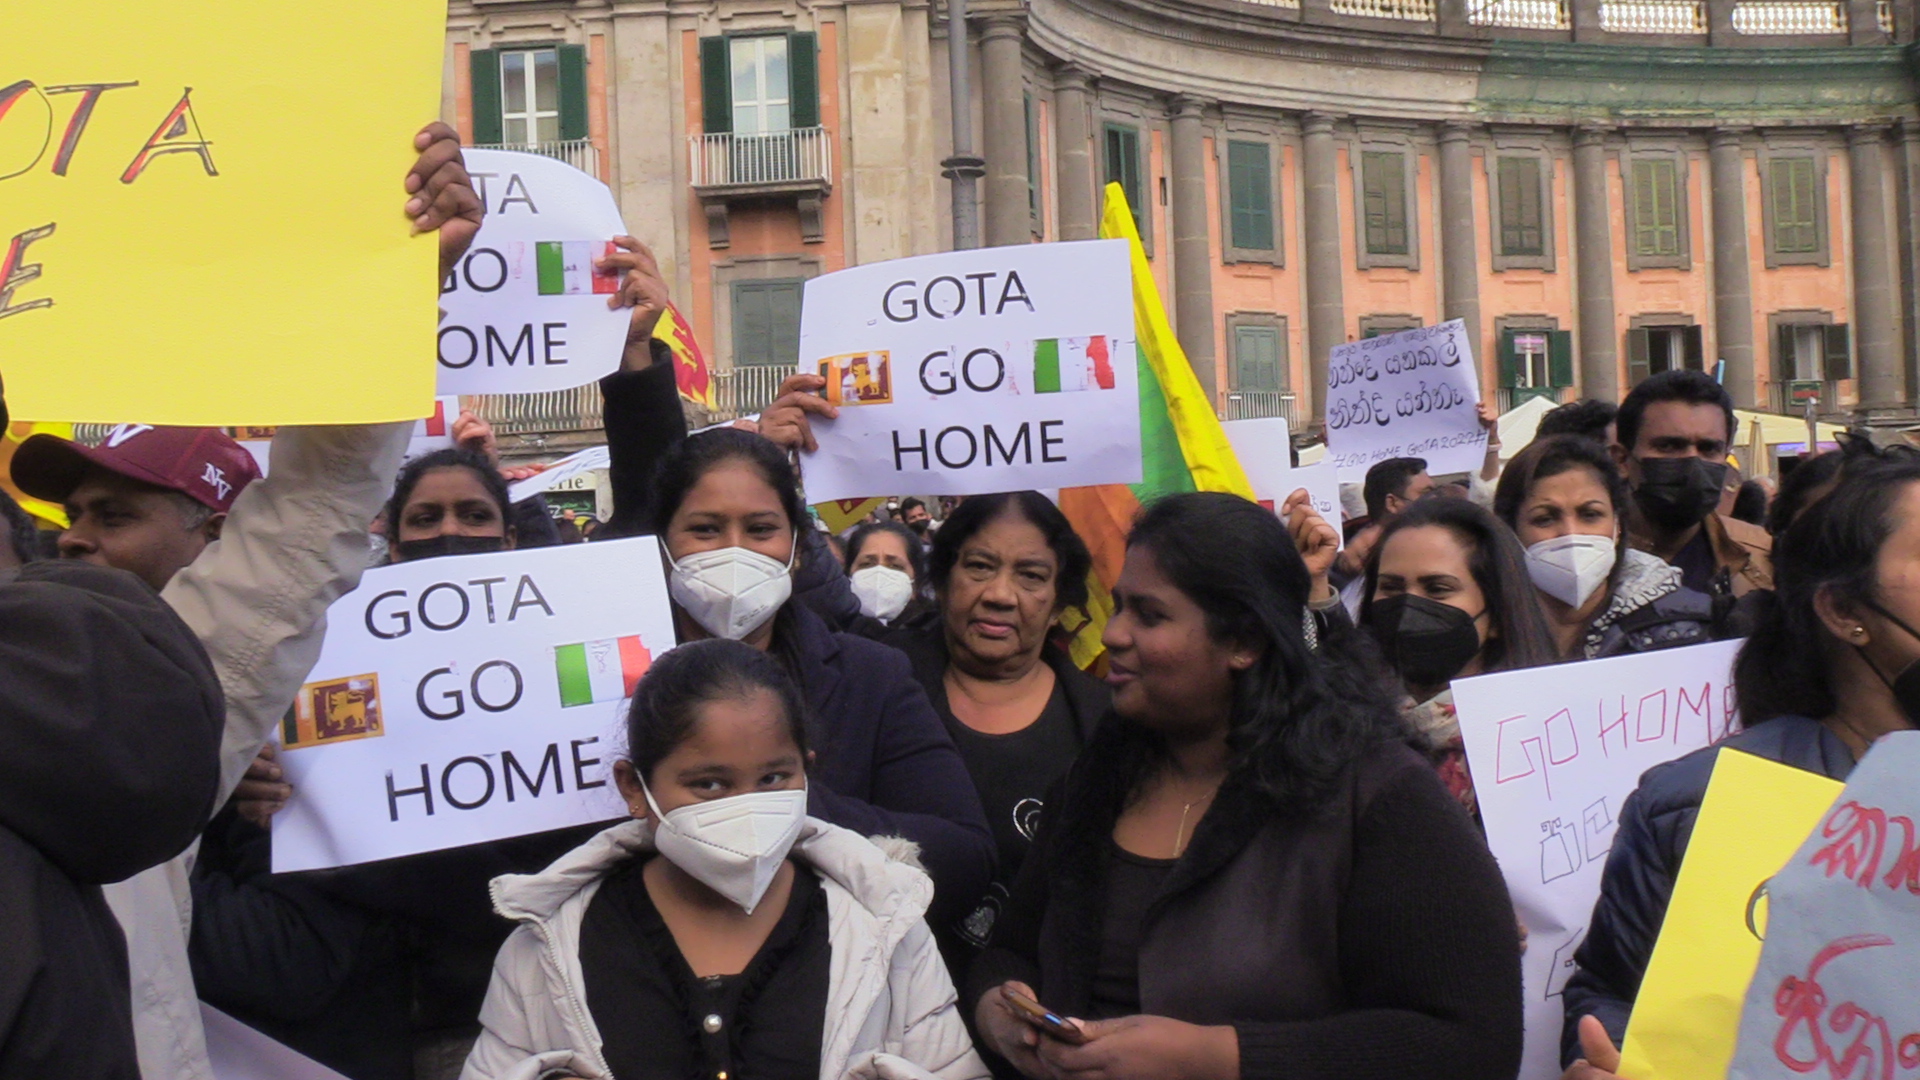 Napoli, la comunità srilankese manifesta contro il governo Gota